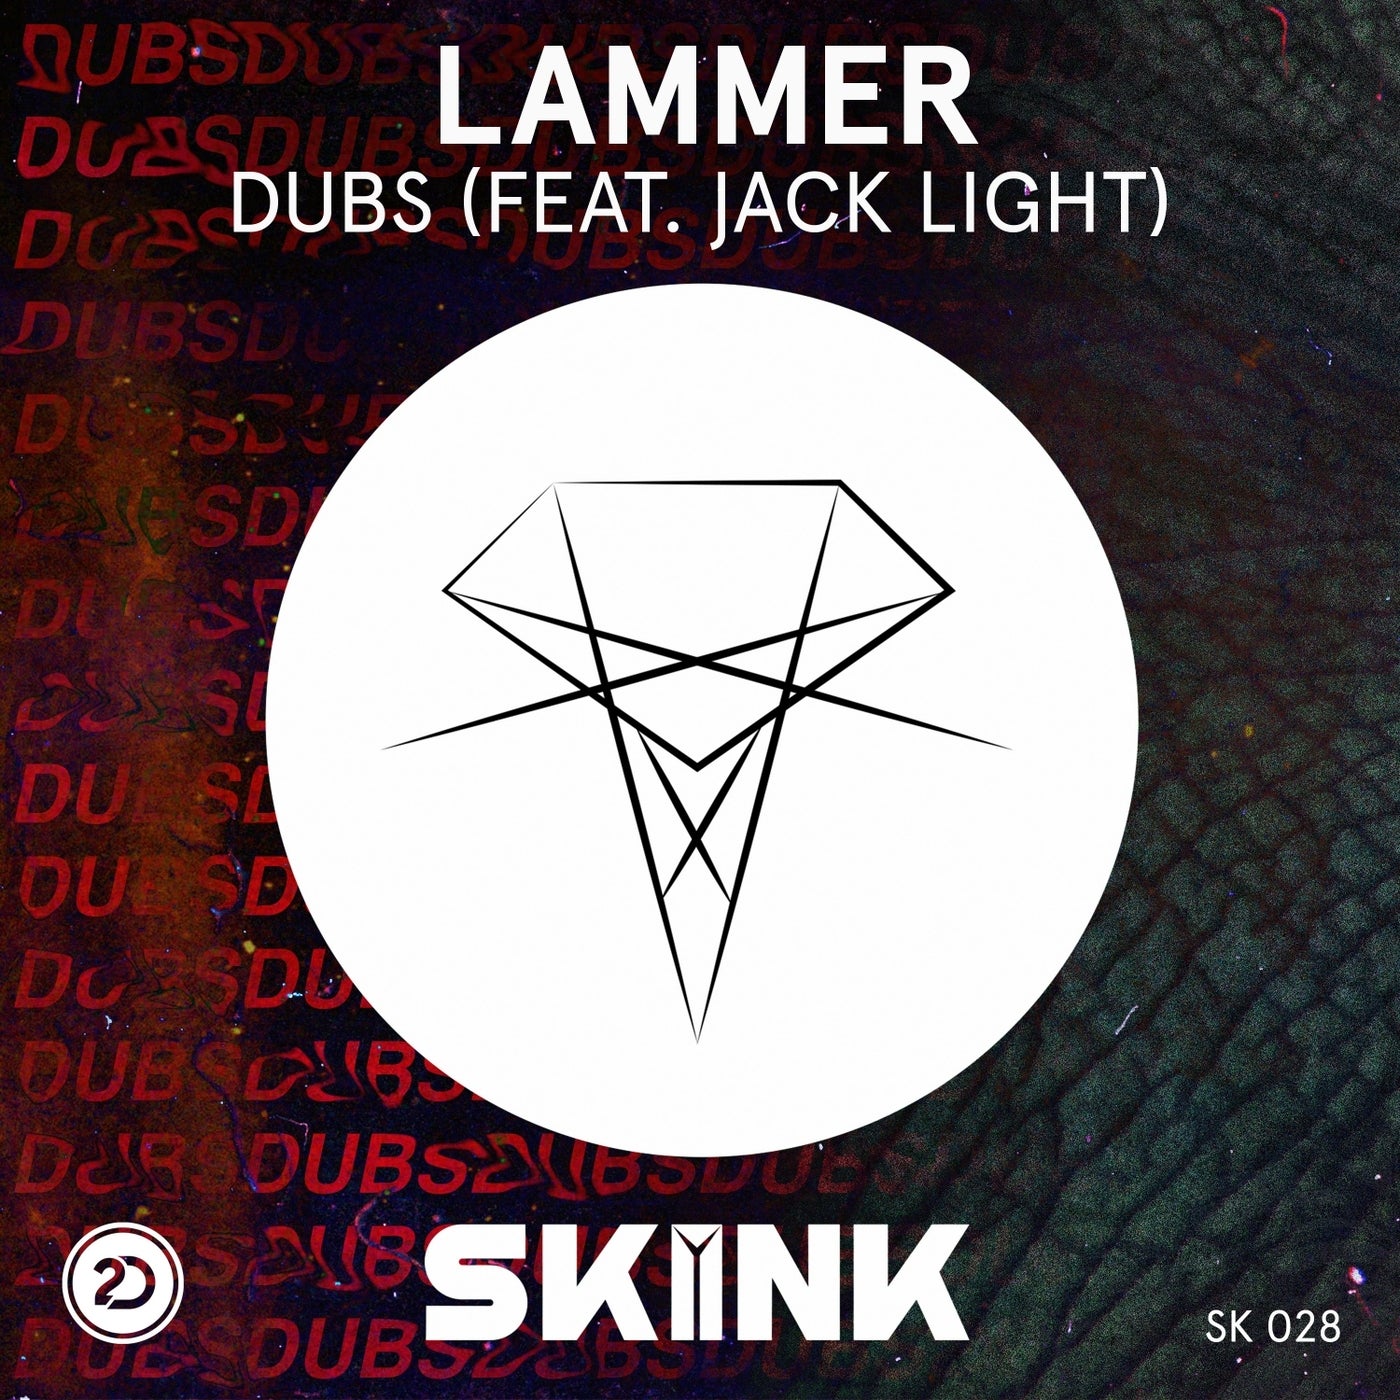 Dubs (feat. Jack Light)